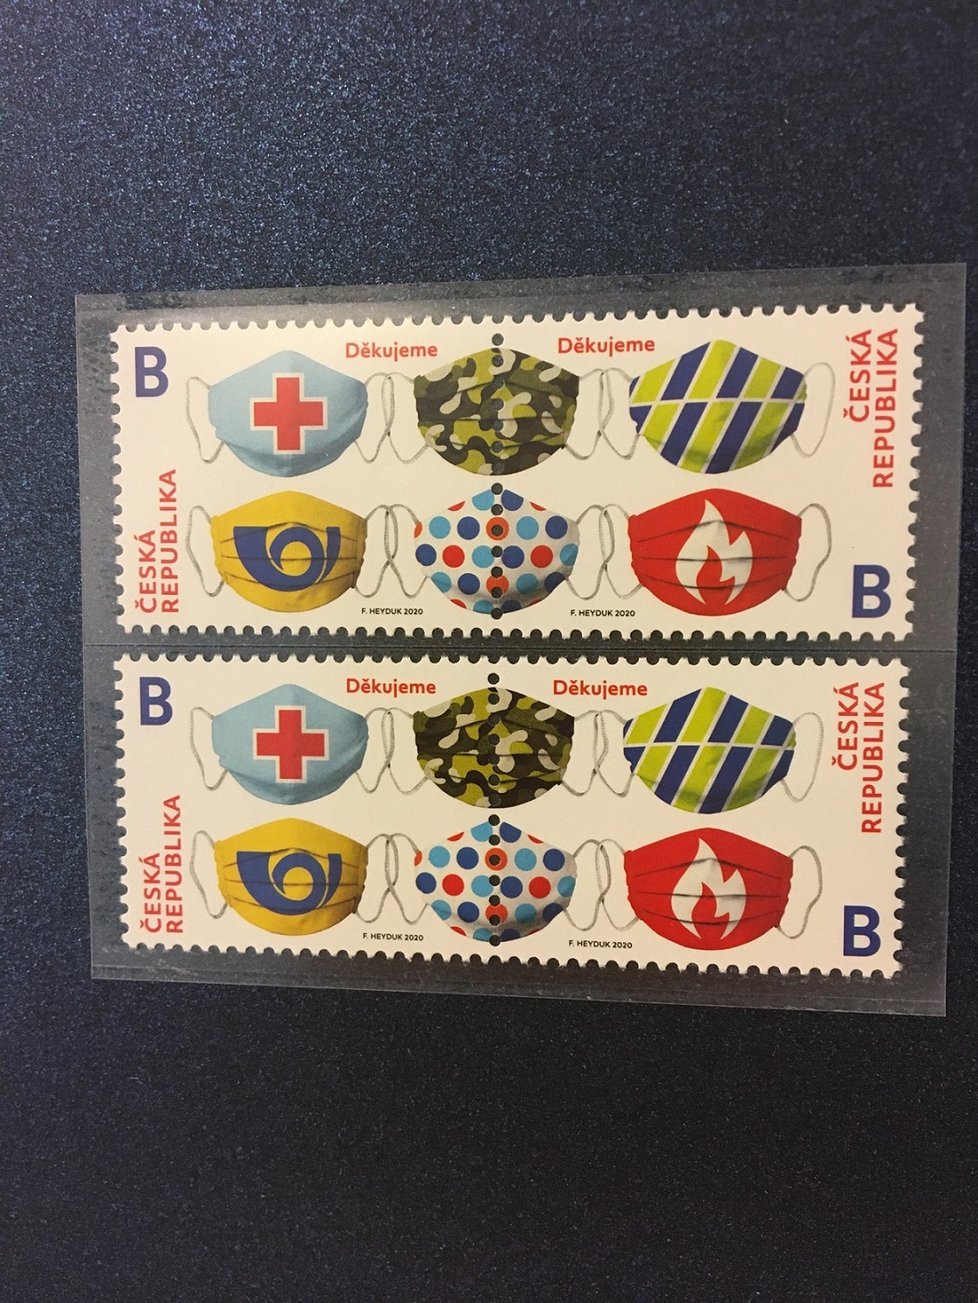 Česká pošta vydává známku s rouškami.